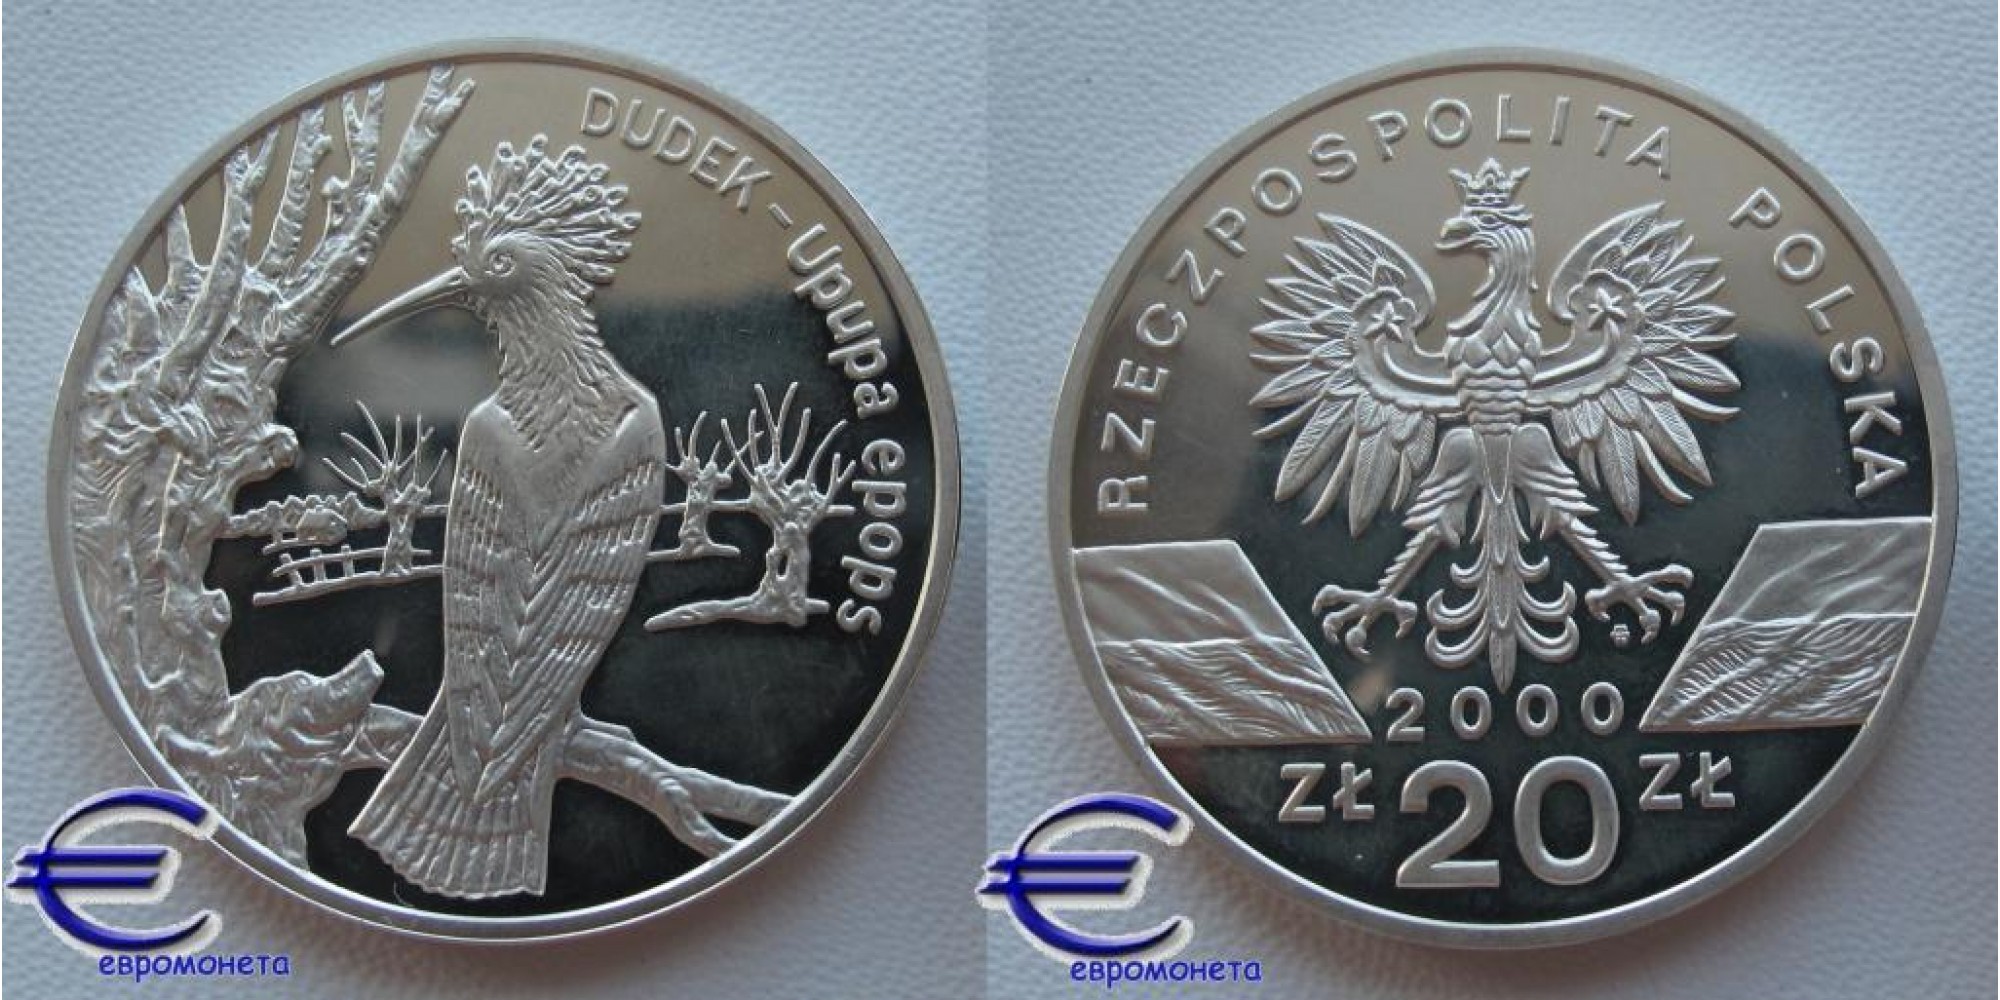 Польша 20 злотых 2000 год пруф Удод Дудек серебро